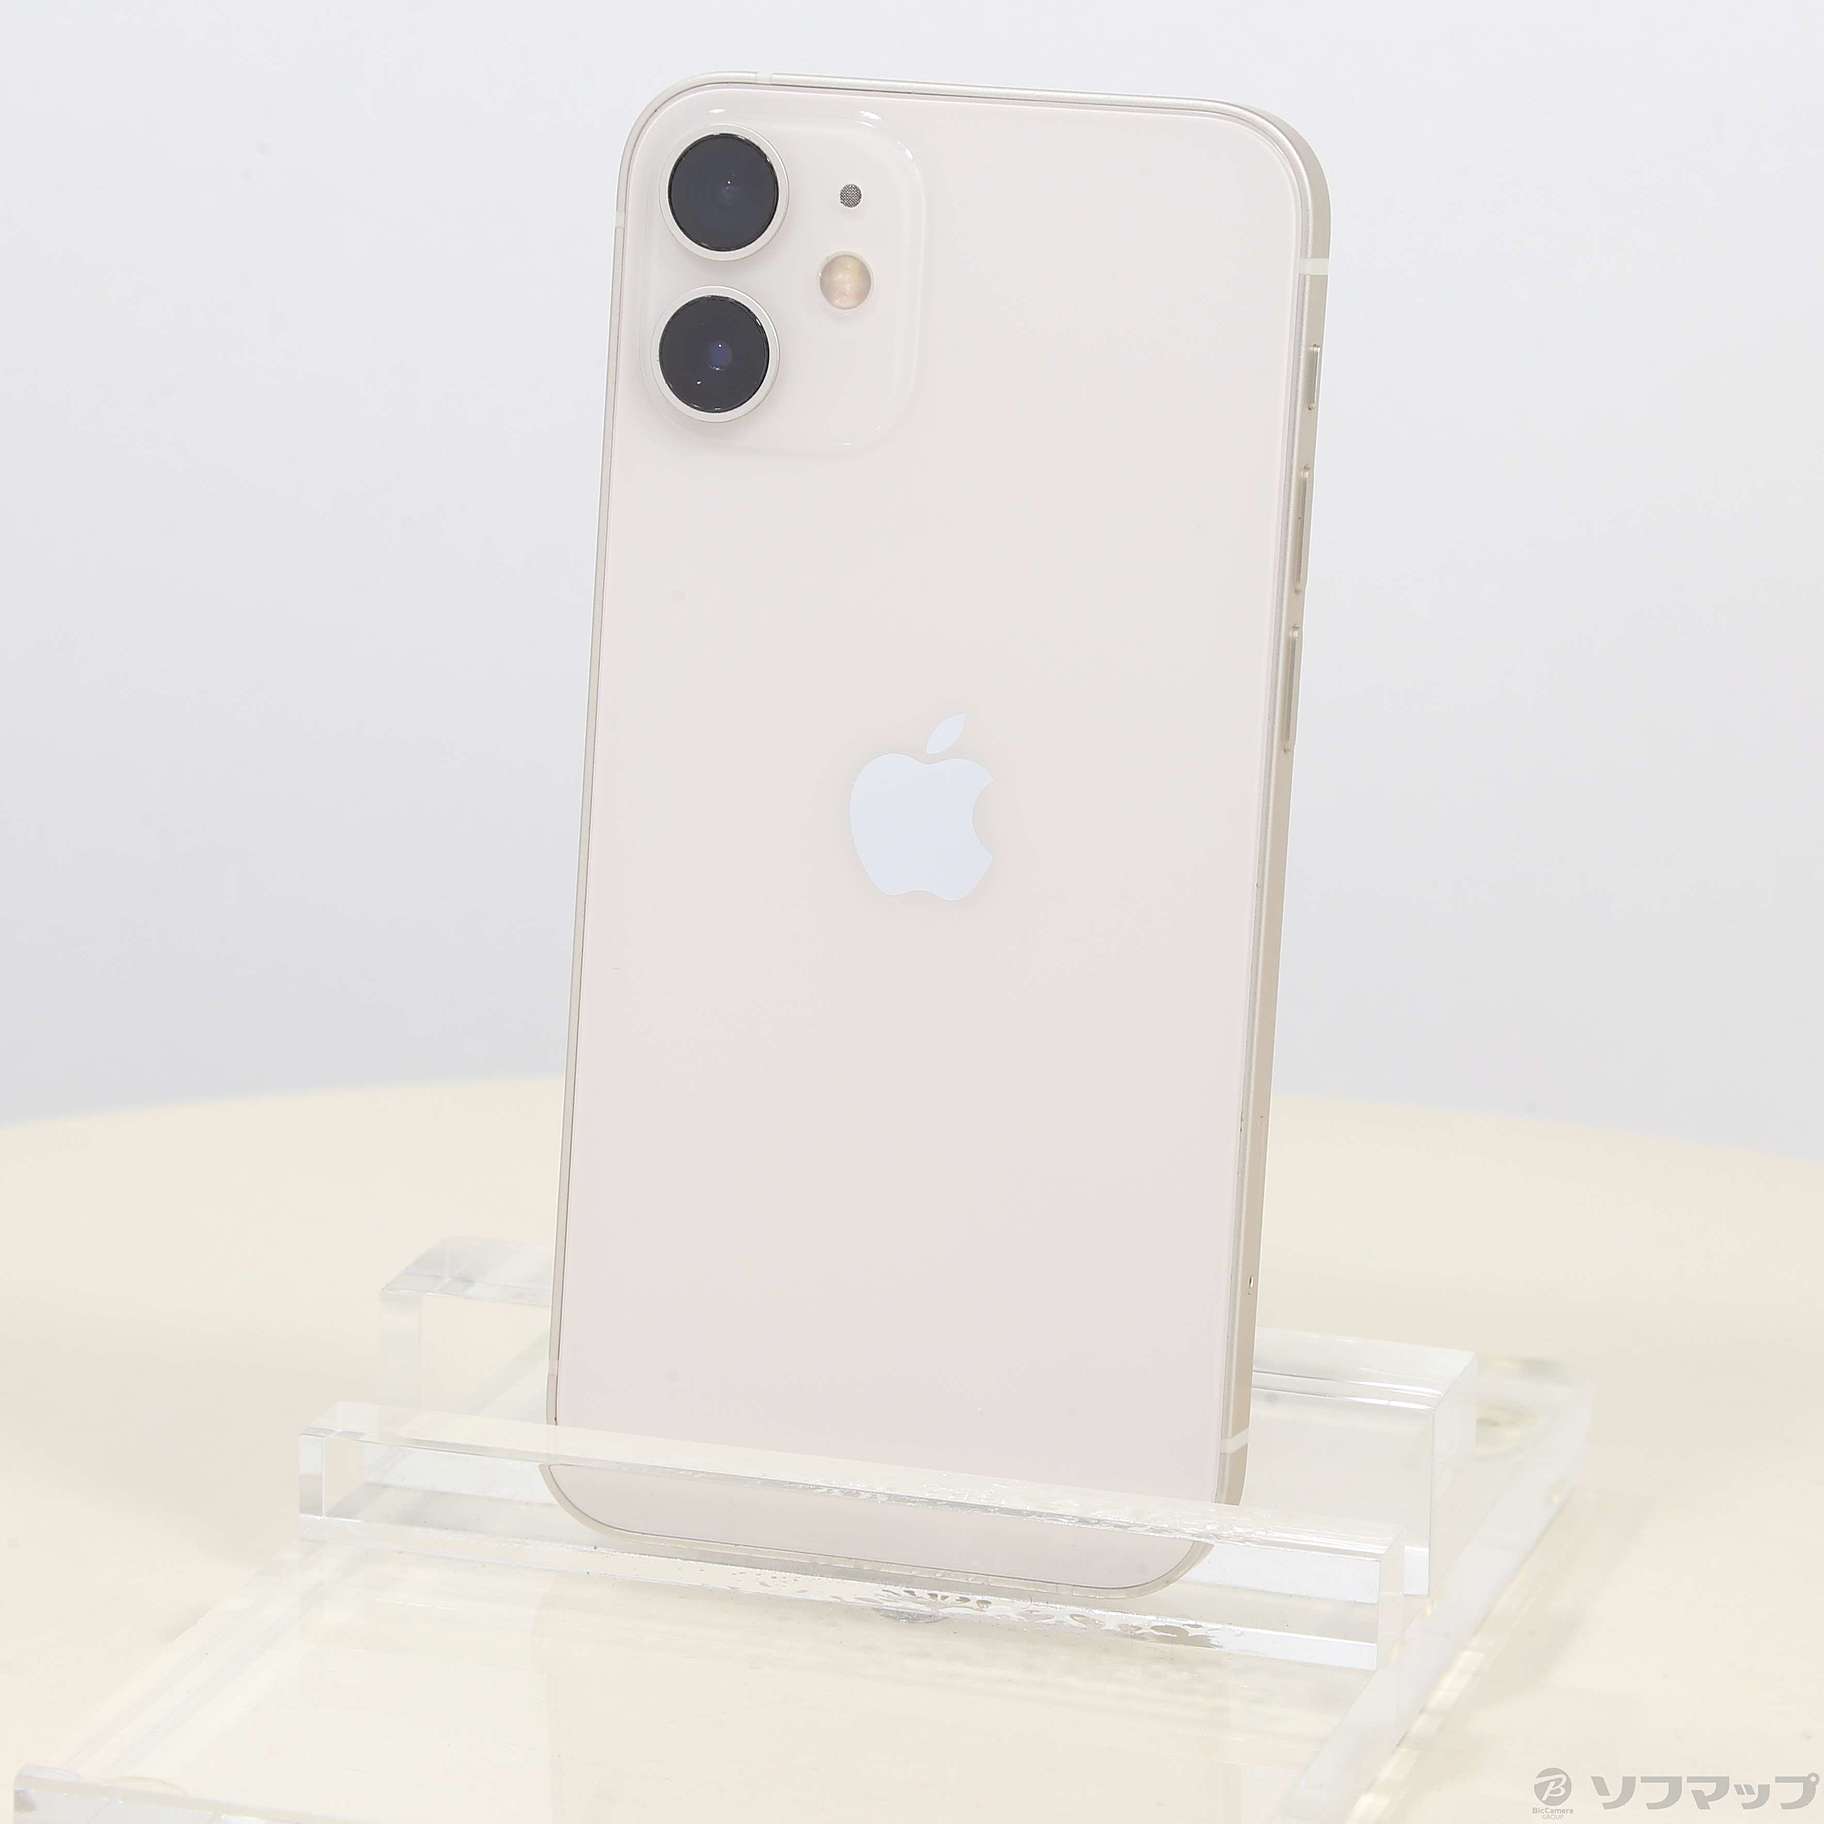 iPhone12 mini 128GB SIMフリー アイフォン 白 ホワイト